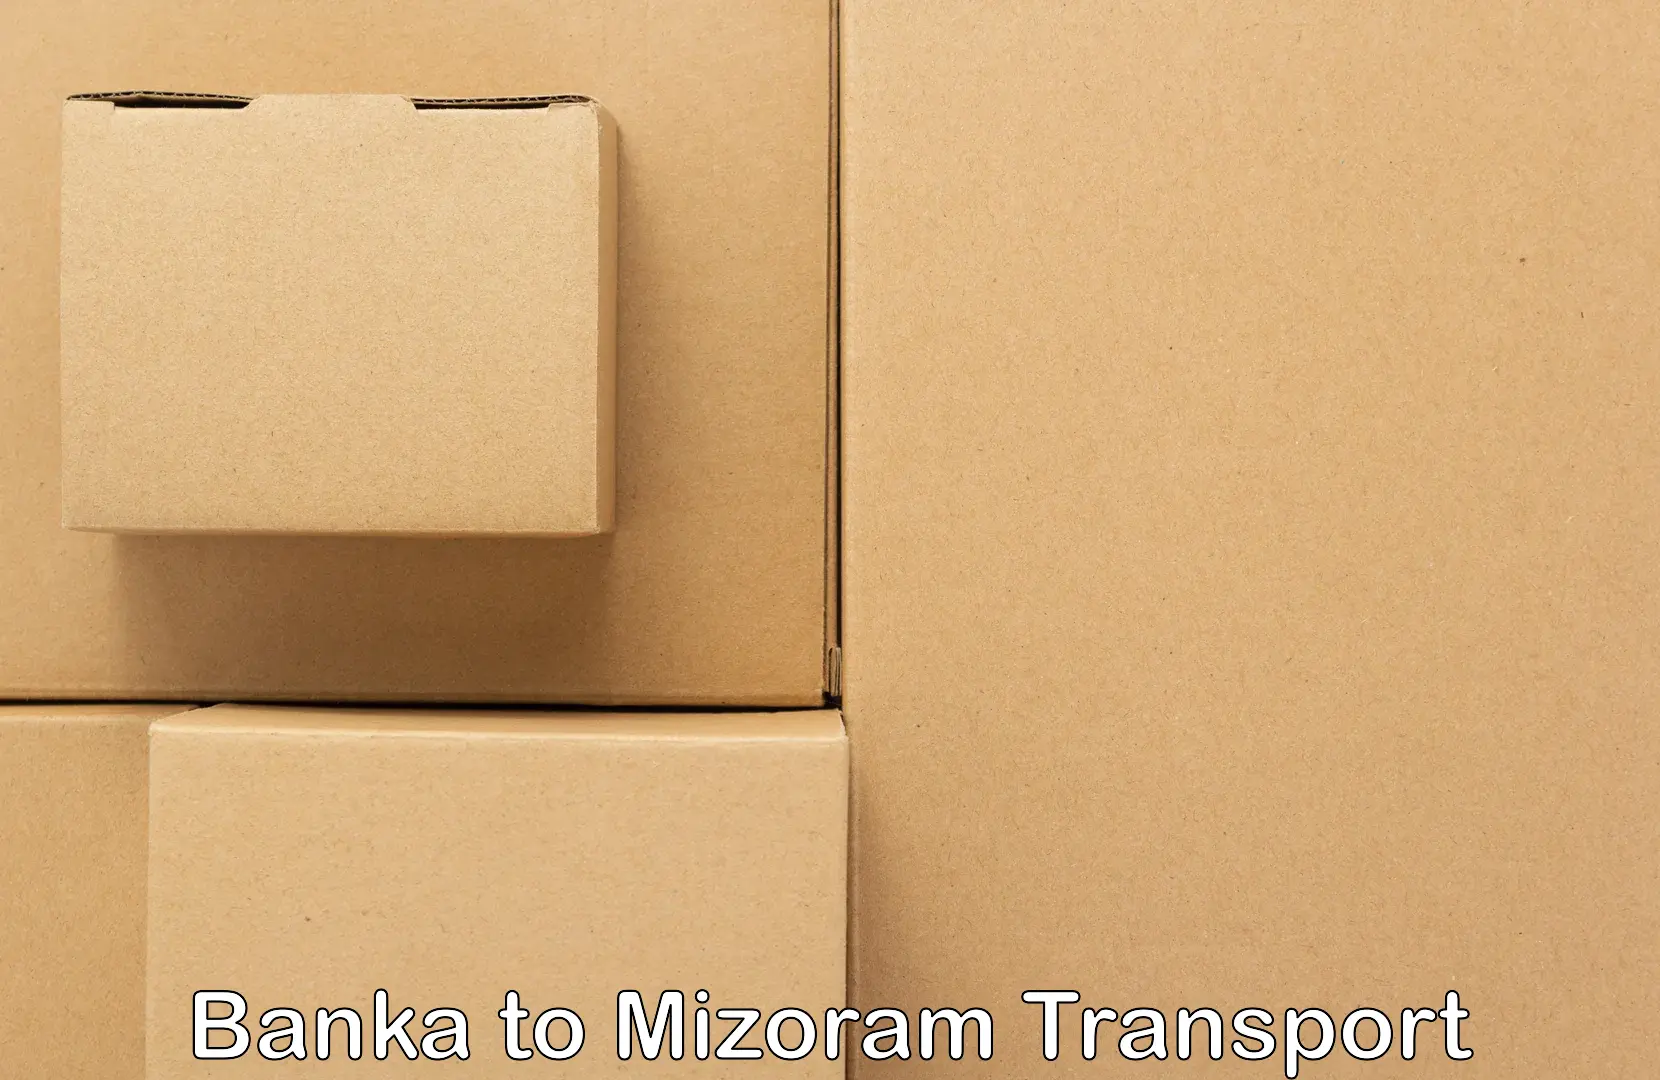 Door to door transport services Banka to Mizoram